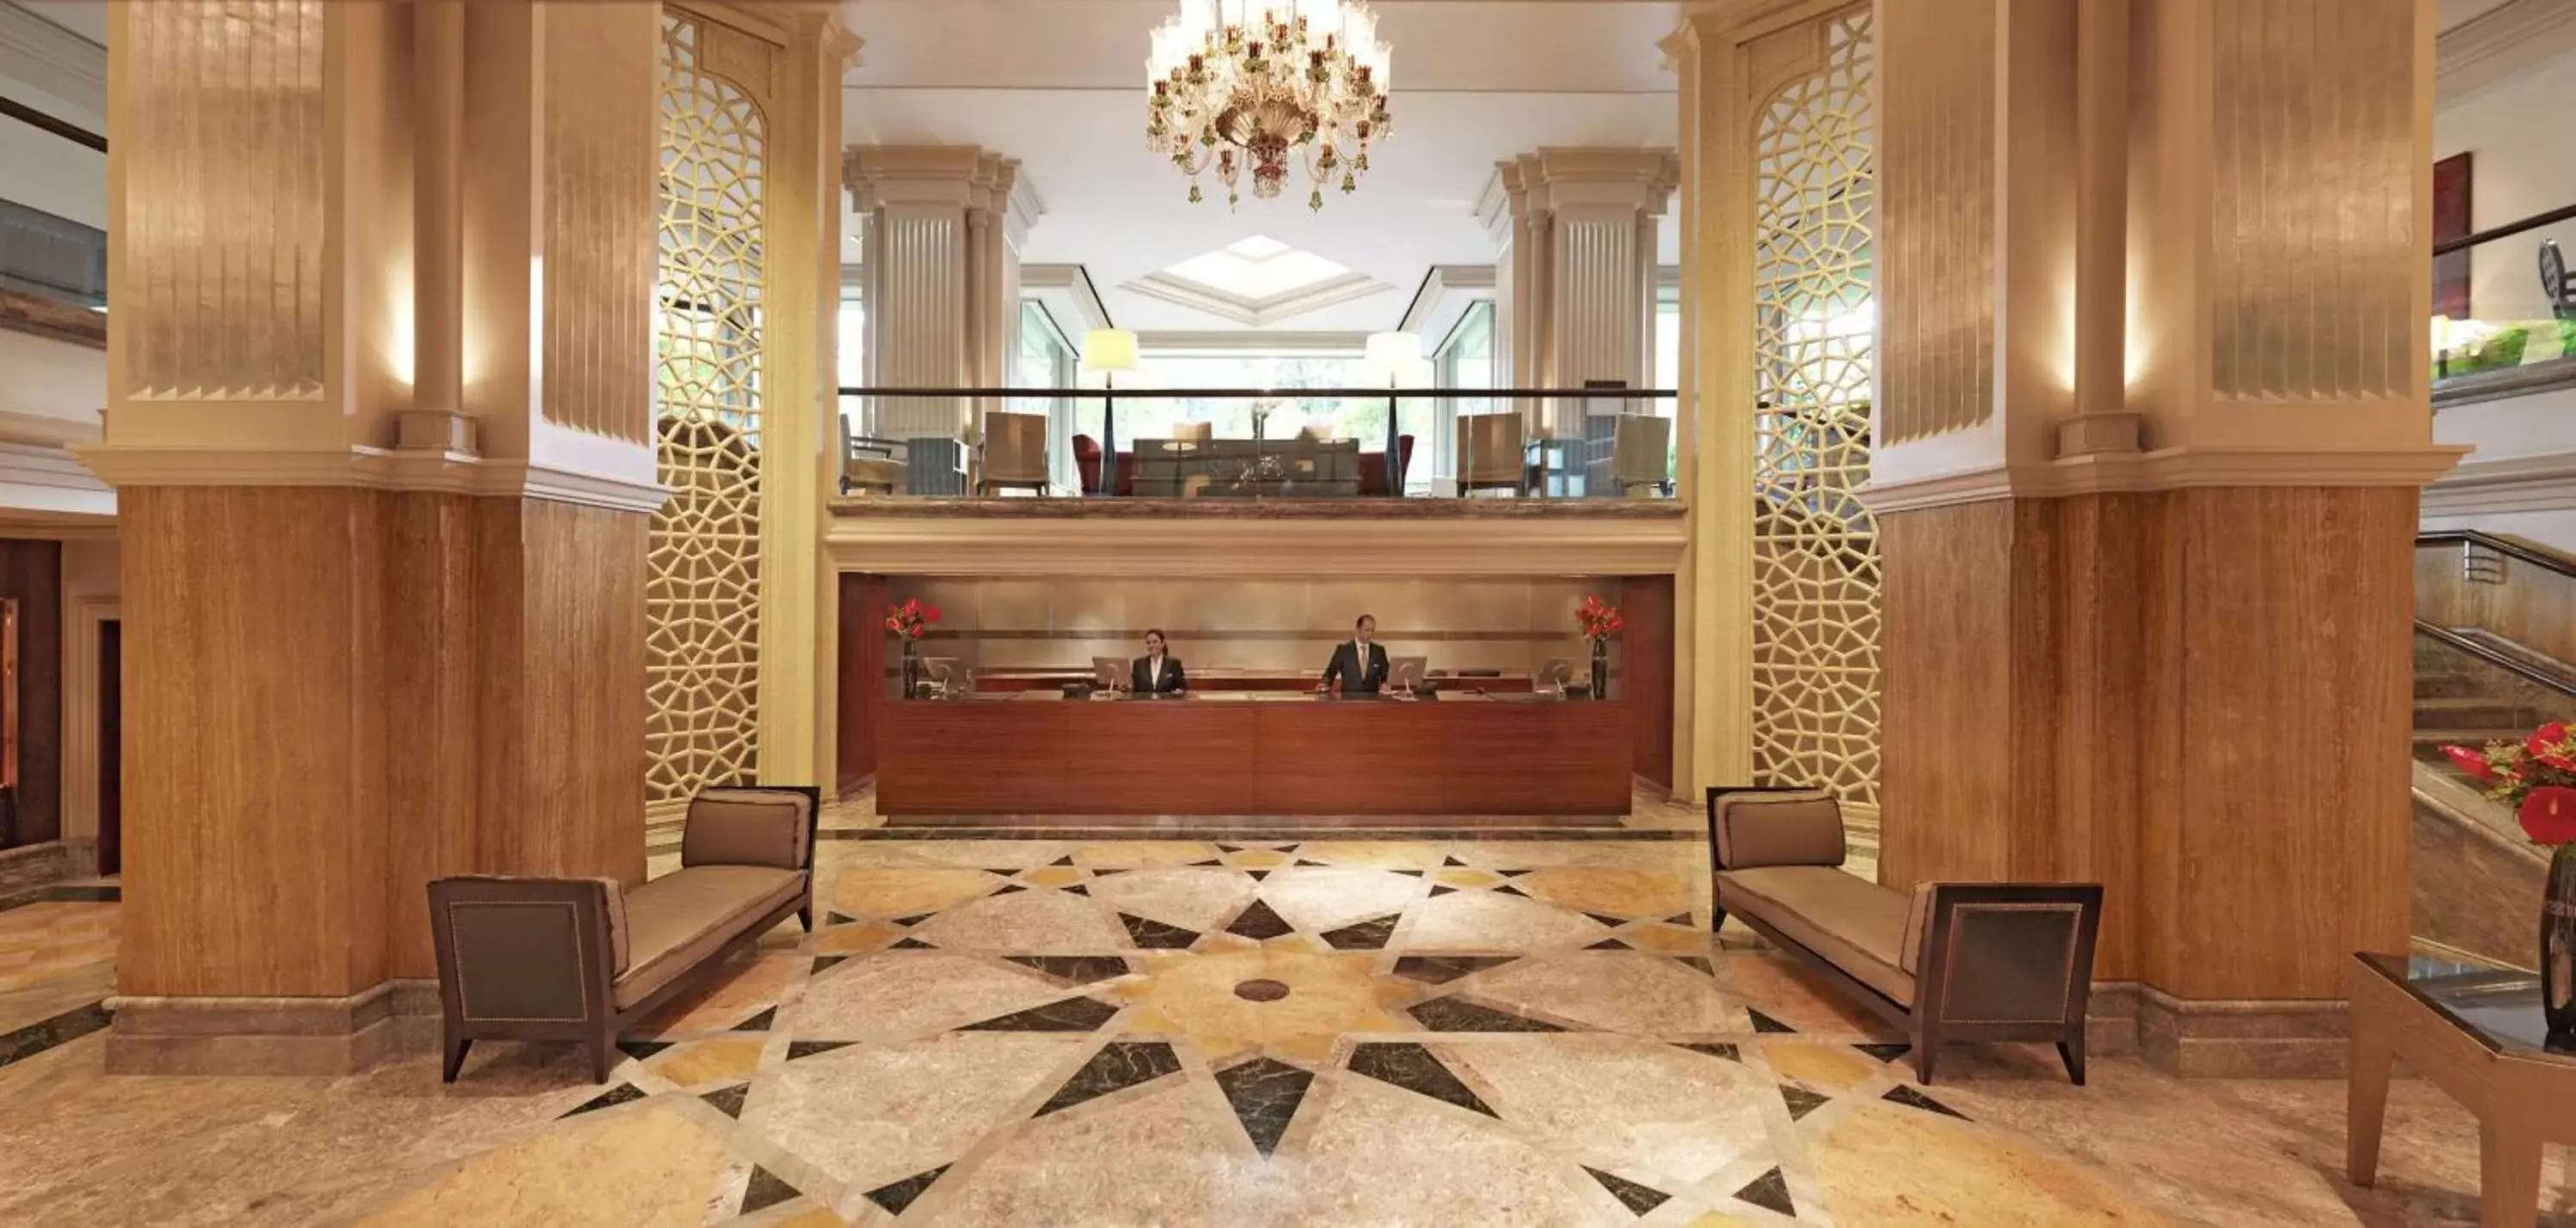 Lobby or reception, Lobby/Reception in Grand Hyatt Istanbul